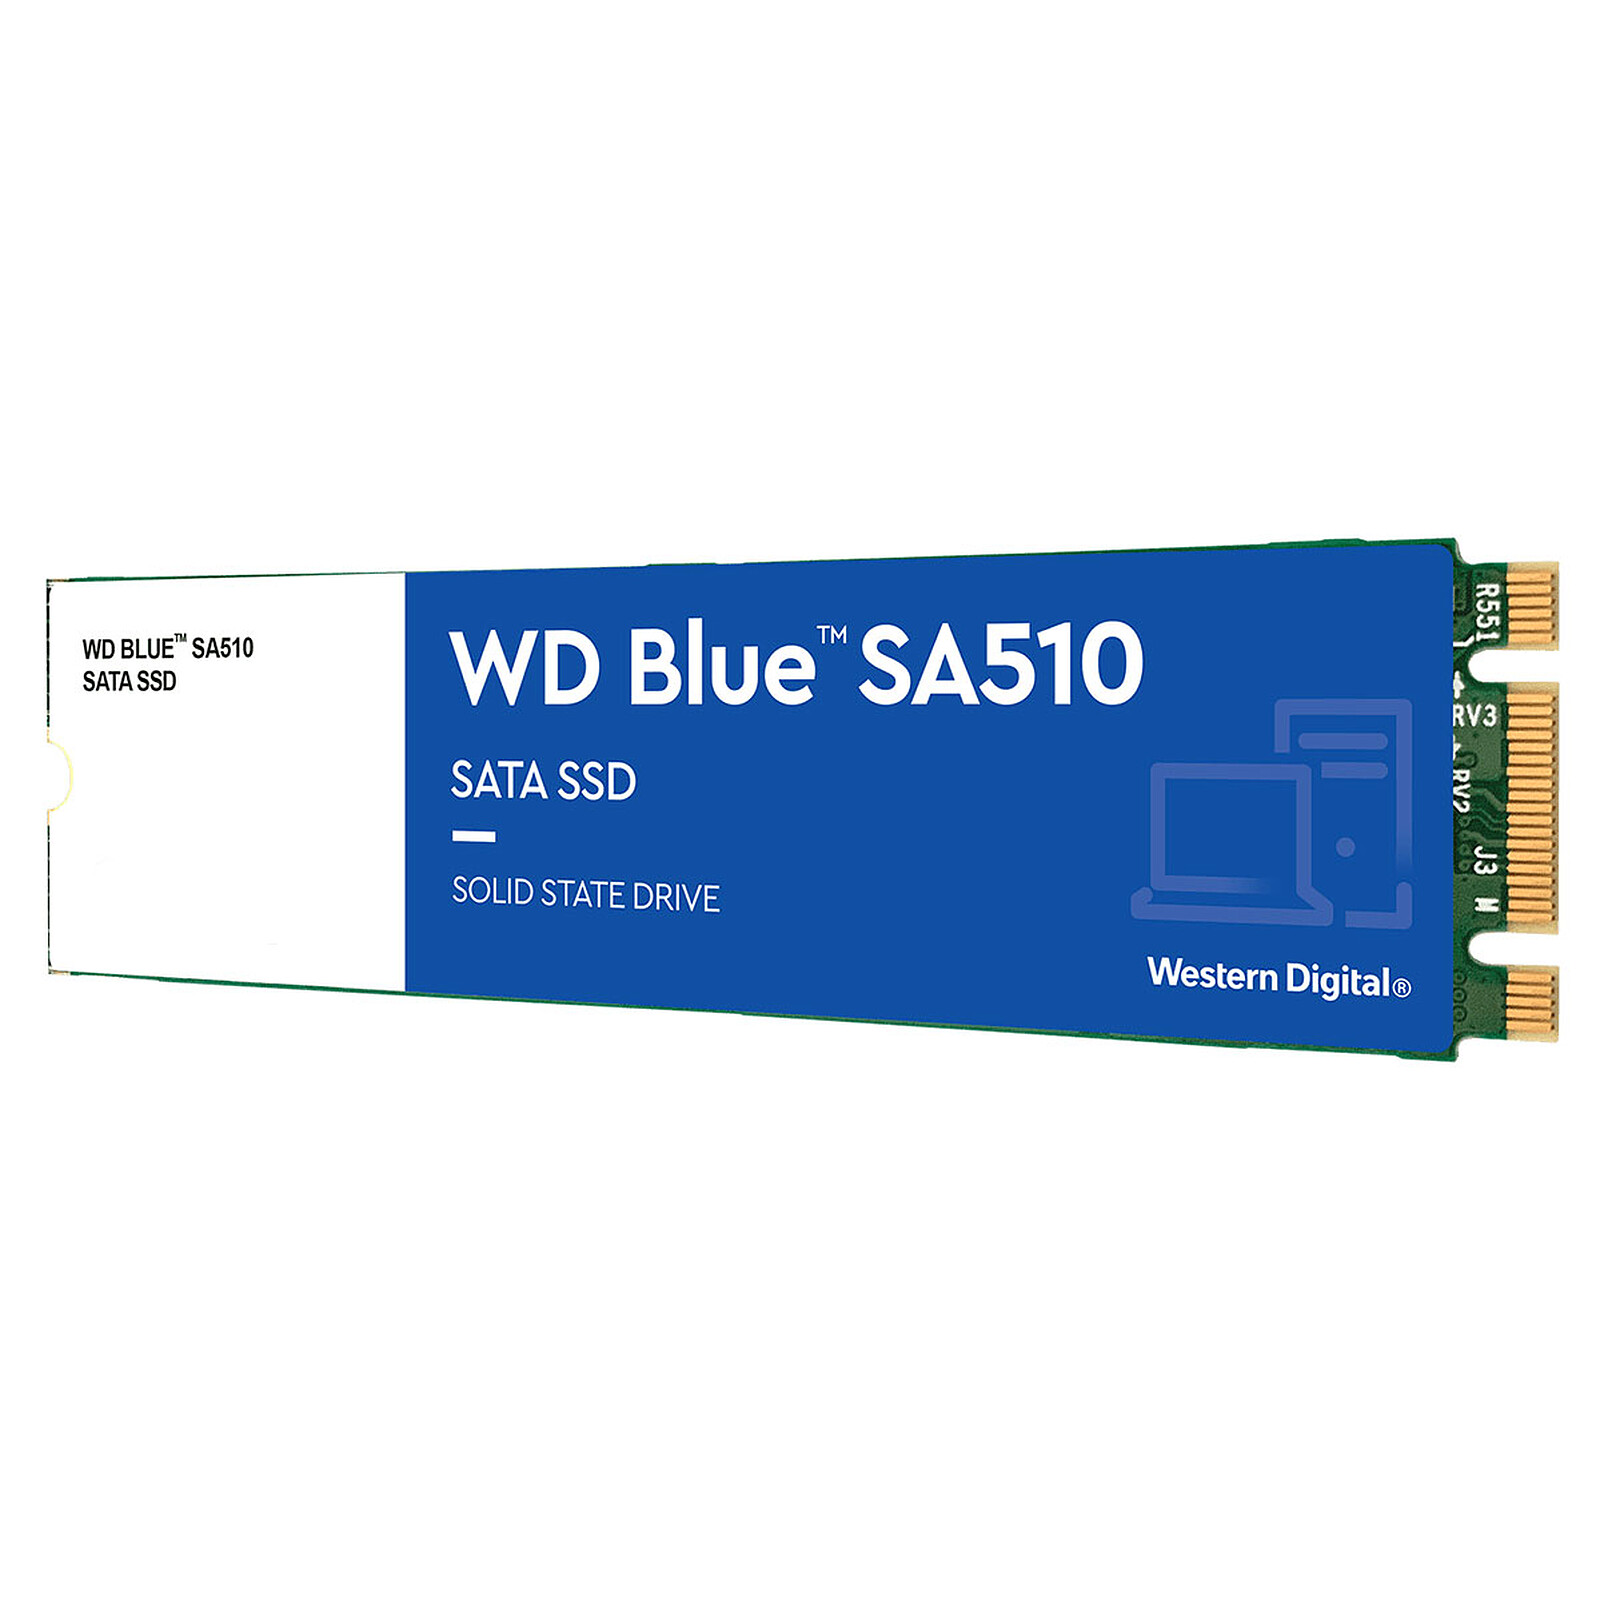 SSD Western Digital WD Blue SA510 250 GB - M.2 - Disco SSD Western Digital LDLC